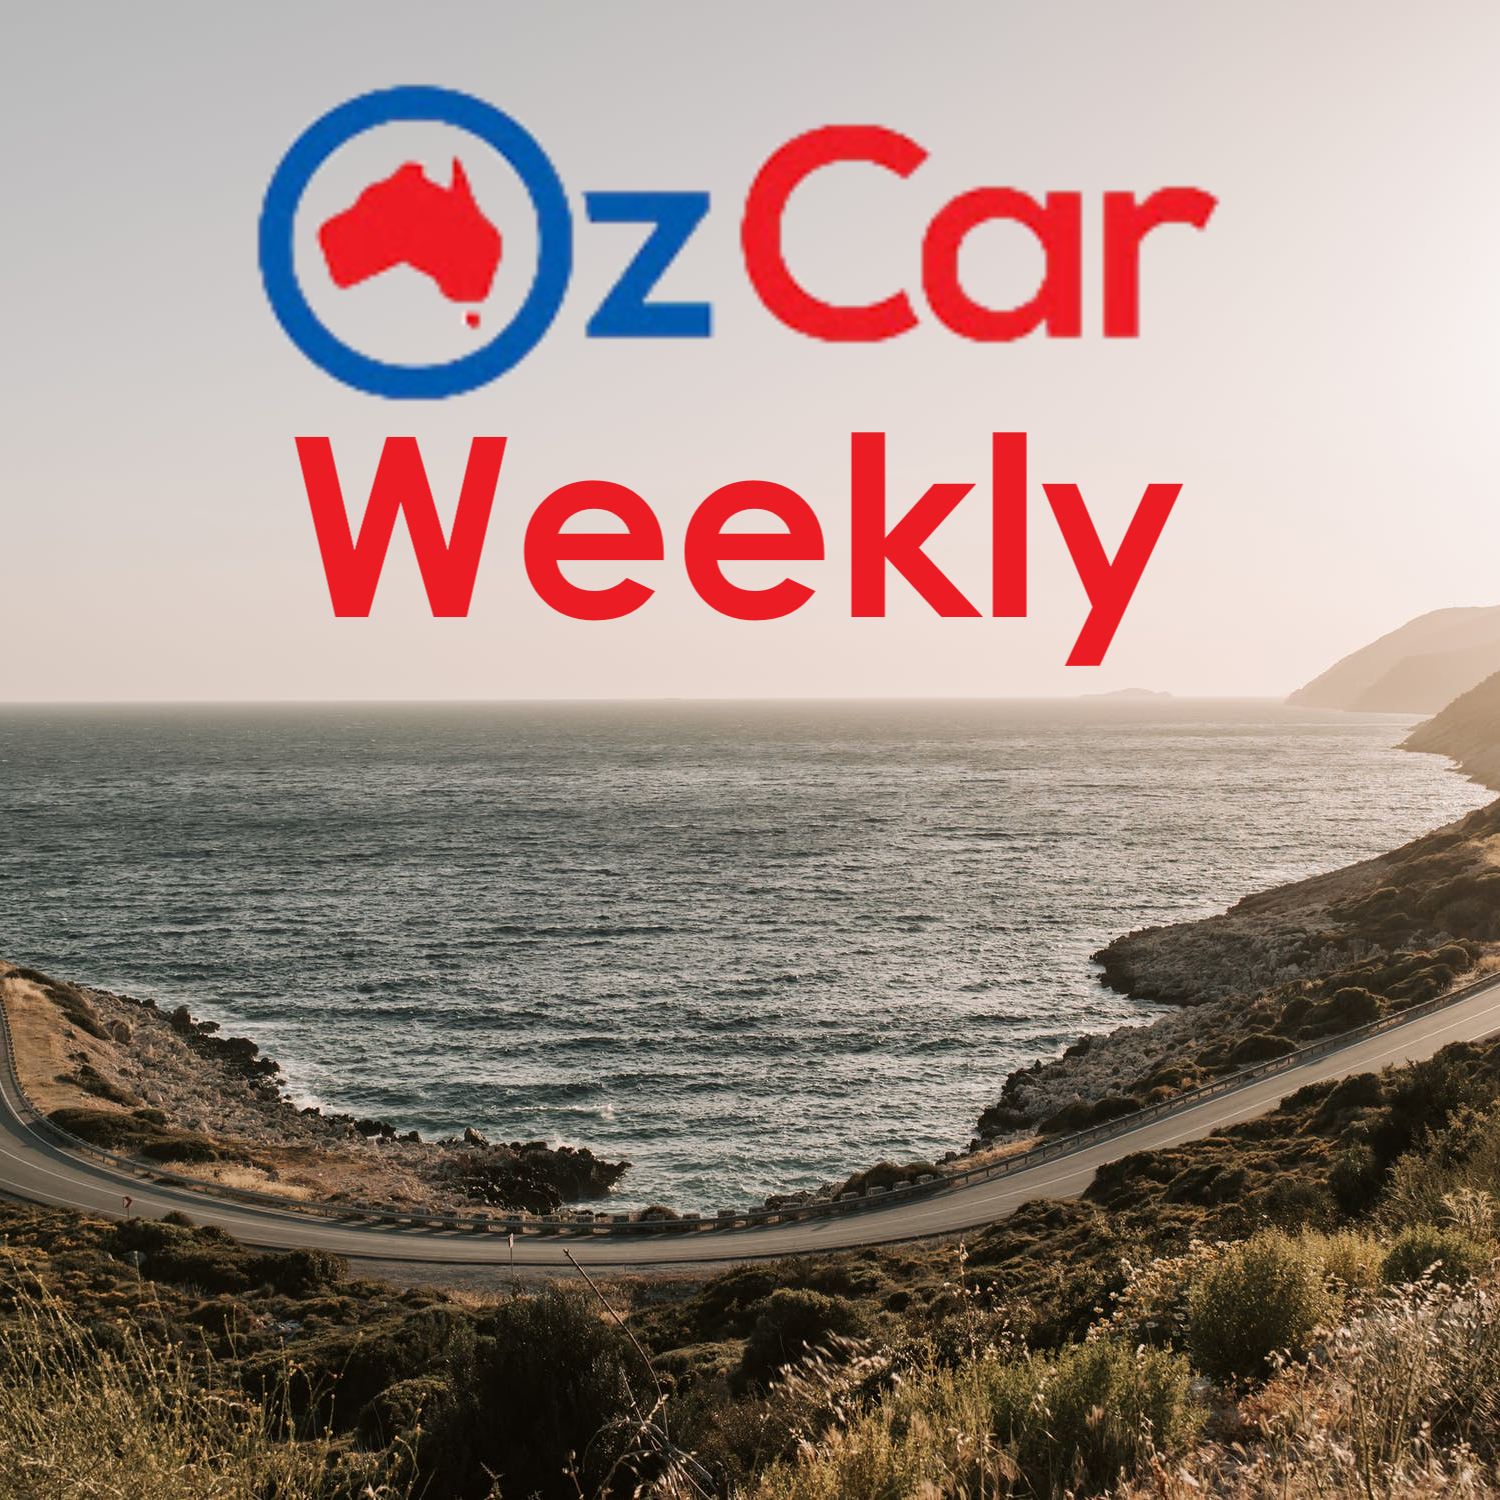 OzCar Weekly Episode 35